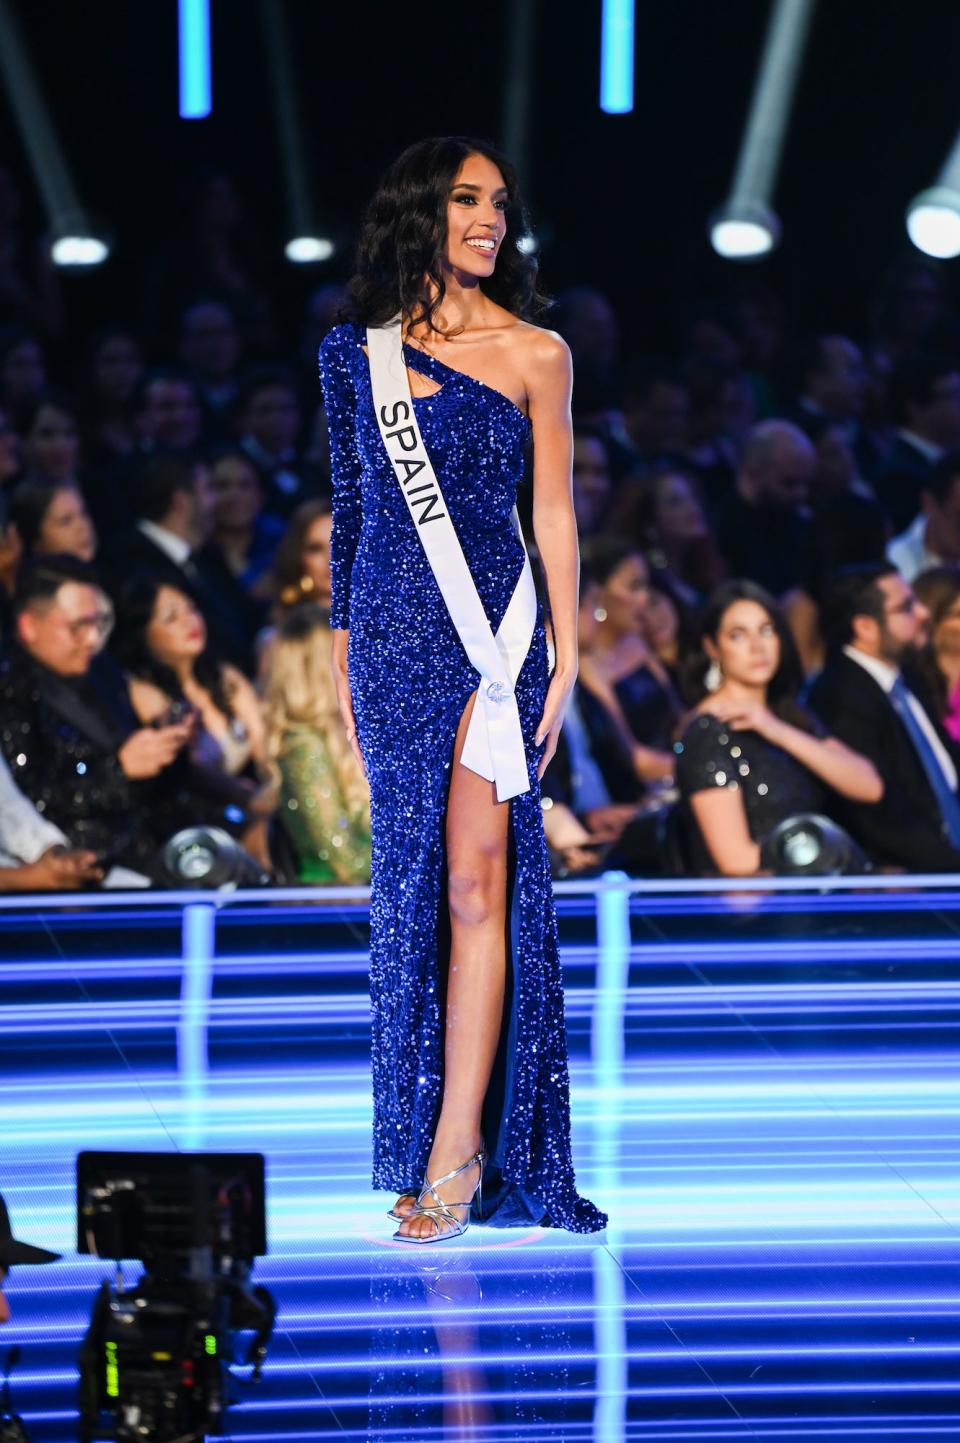 Miss Spain Athenea Pérez during the Miss Universe competition.